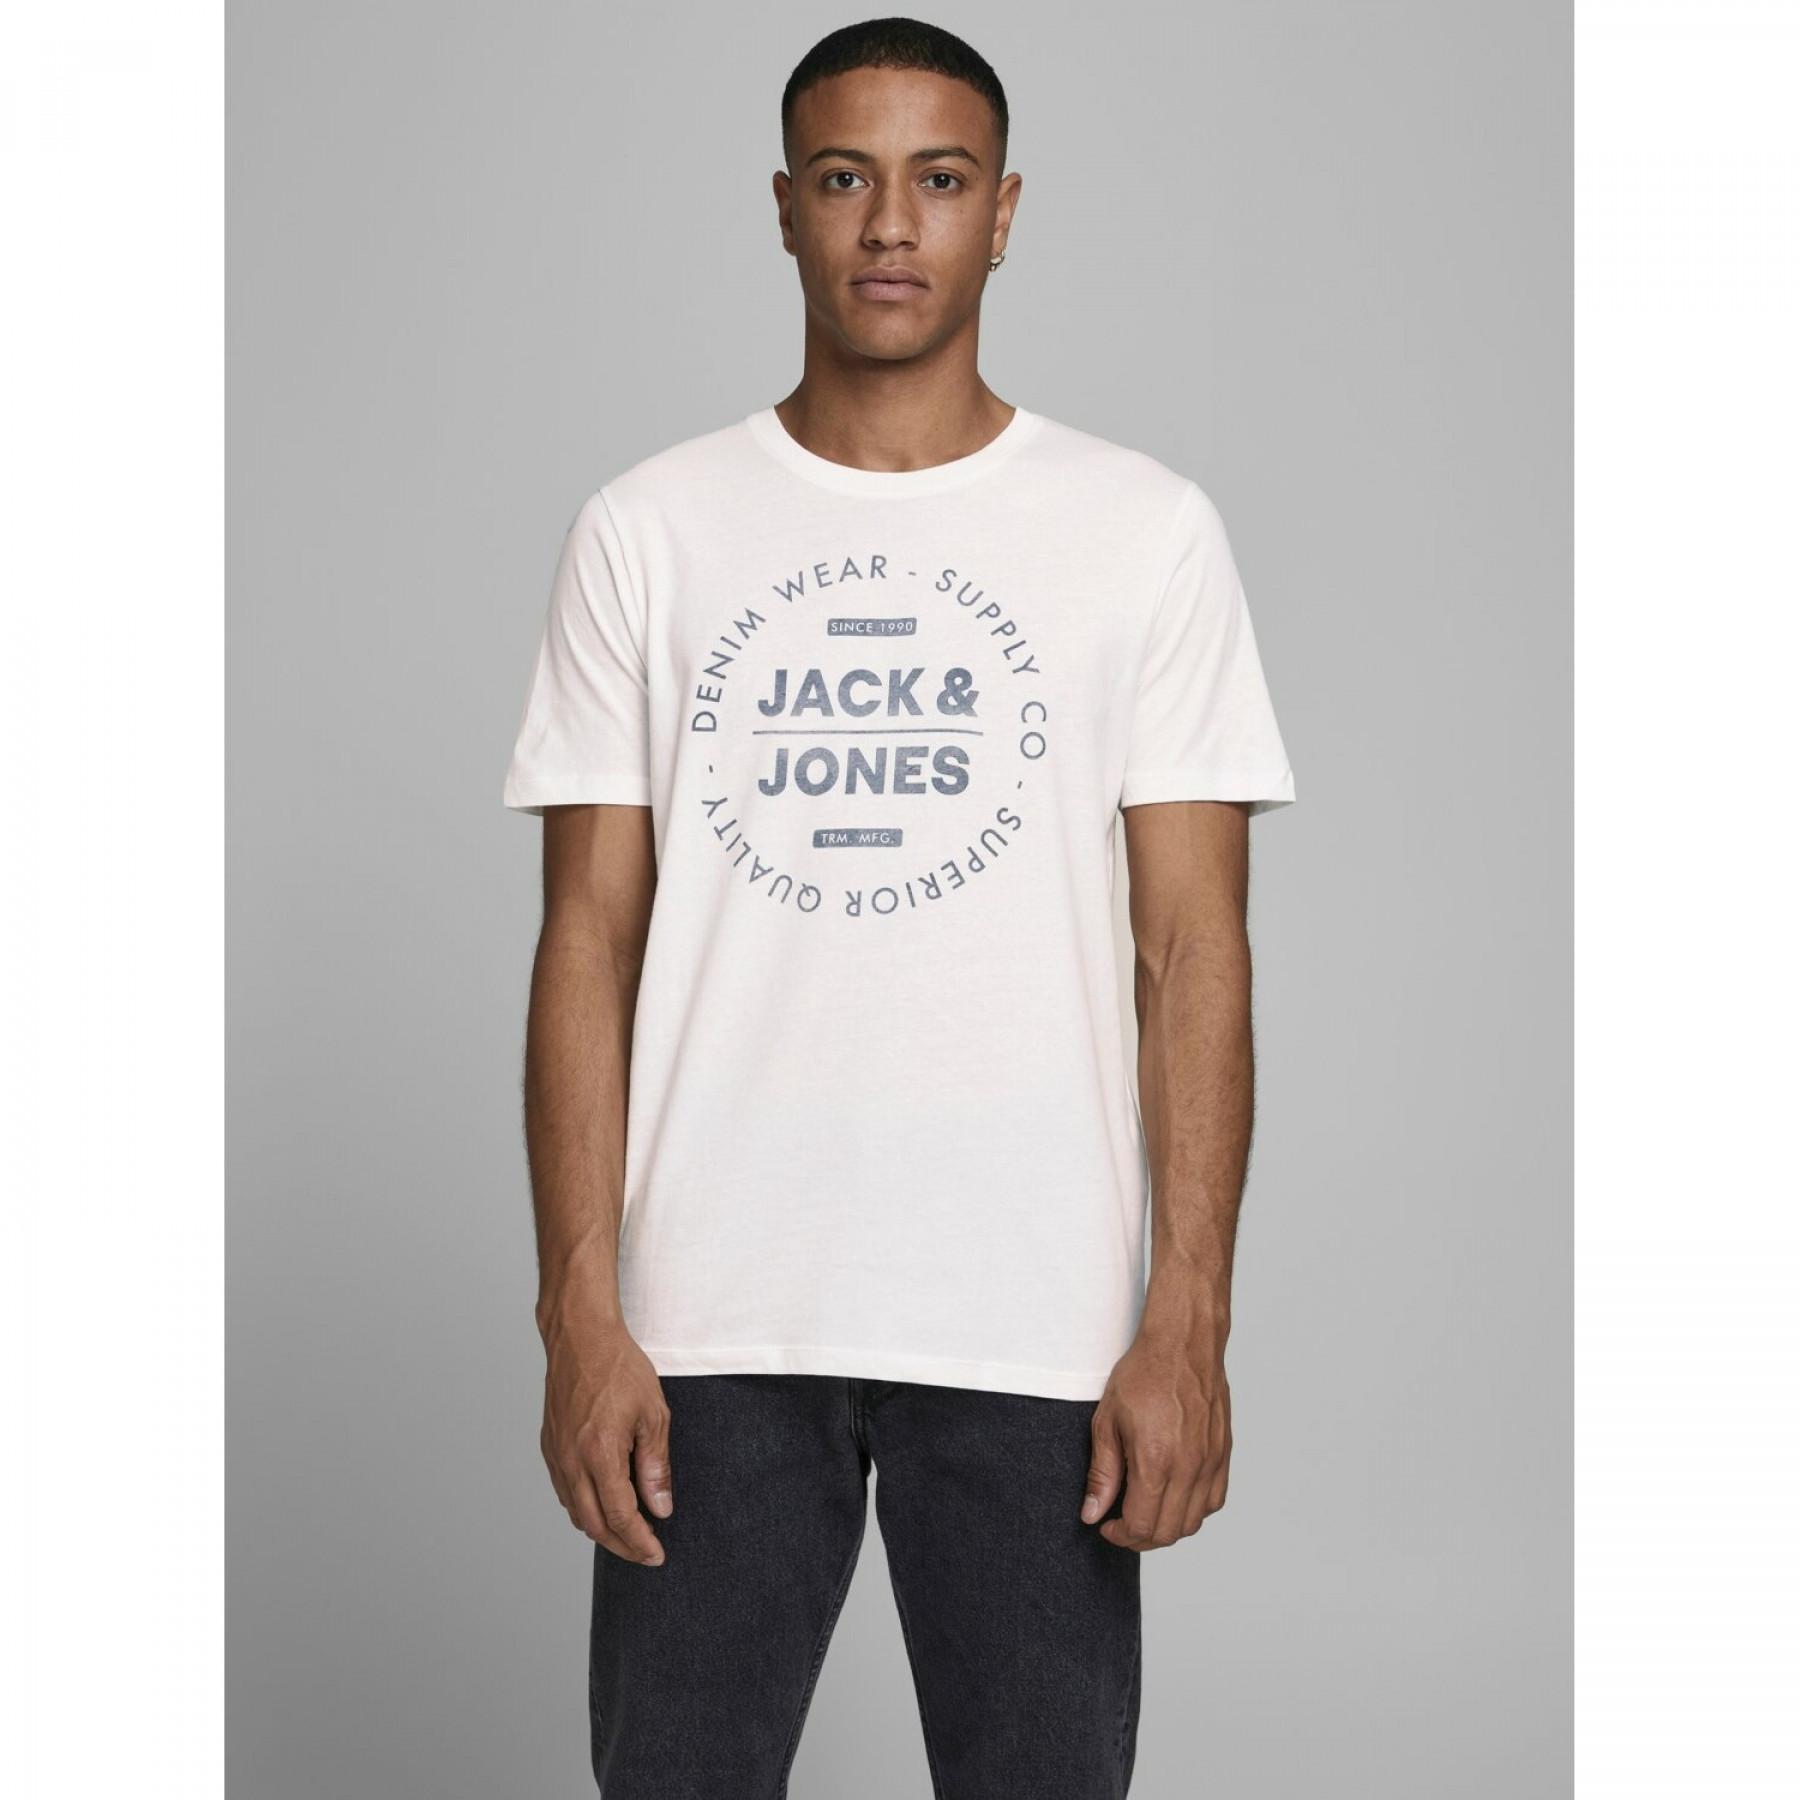 Koszulka Jack & Jones Jeans crew neck 20/21